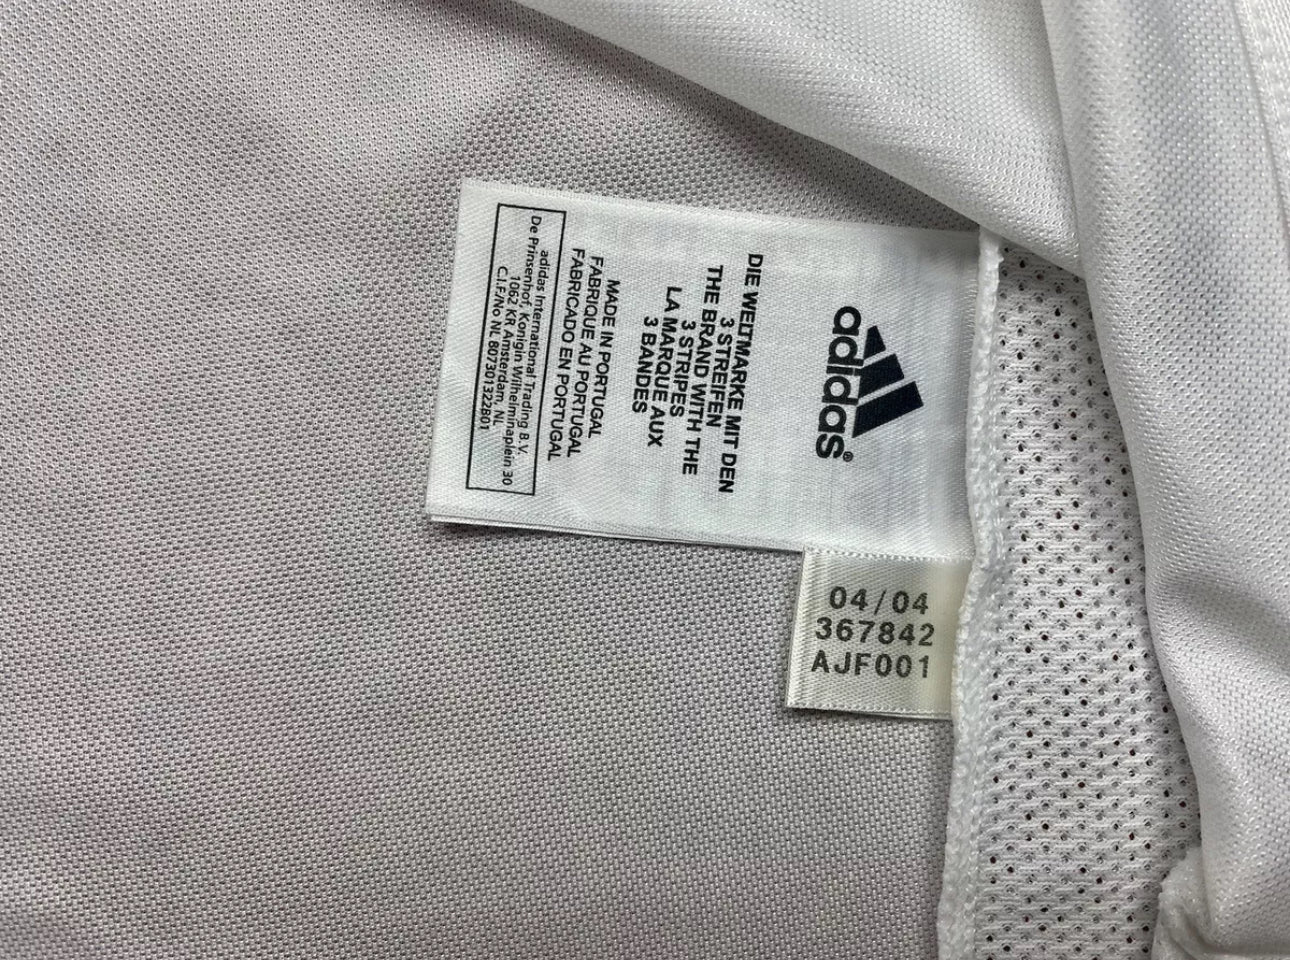 Vintage Real Madrid 2004-05 Adidas Football Jersey Camiseta Fútbol Size - (S) / NUEVA CON DETALLES